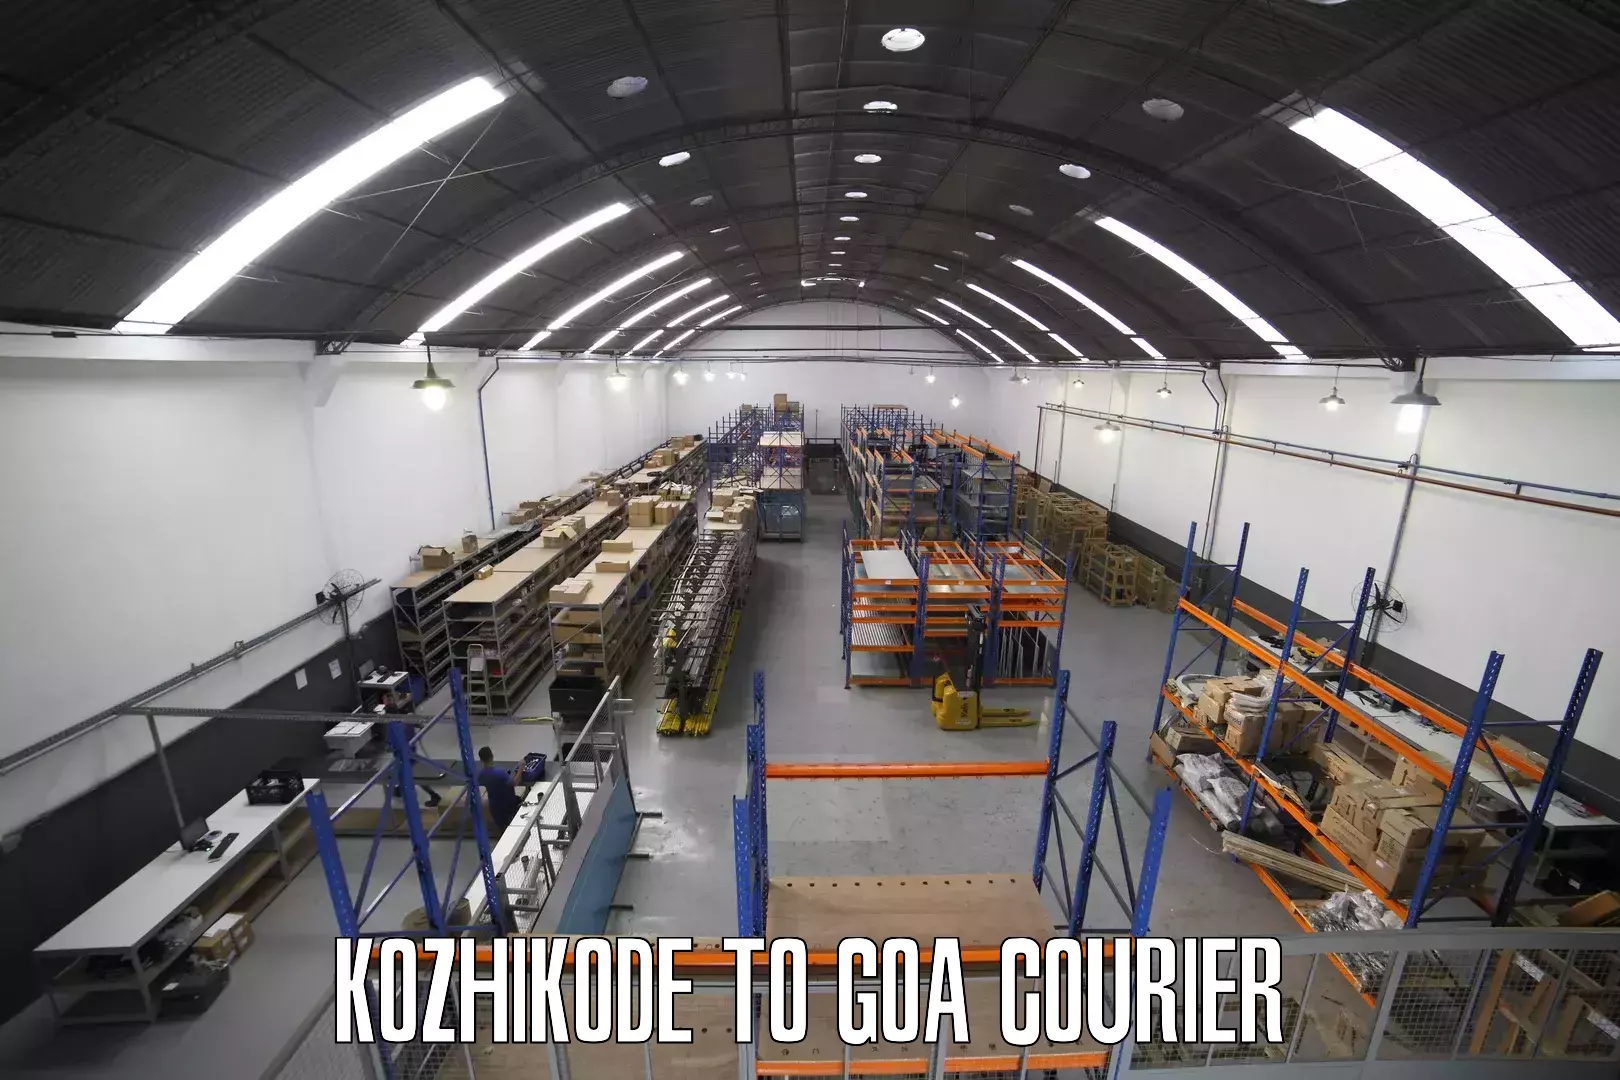 Digital courier platforms Kozhikode to Vasco da Gama